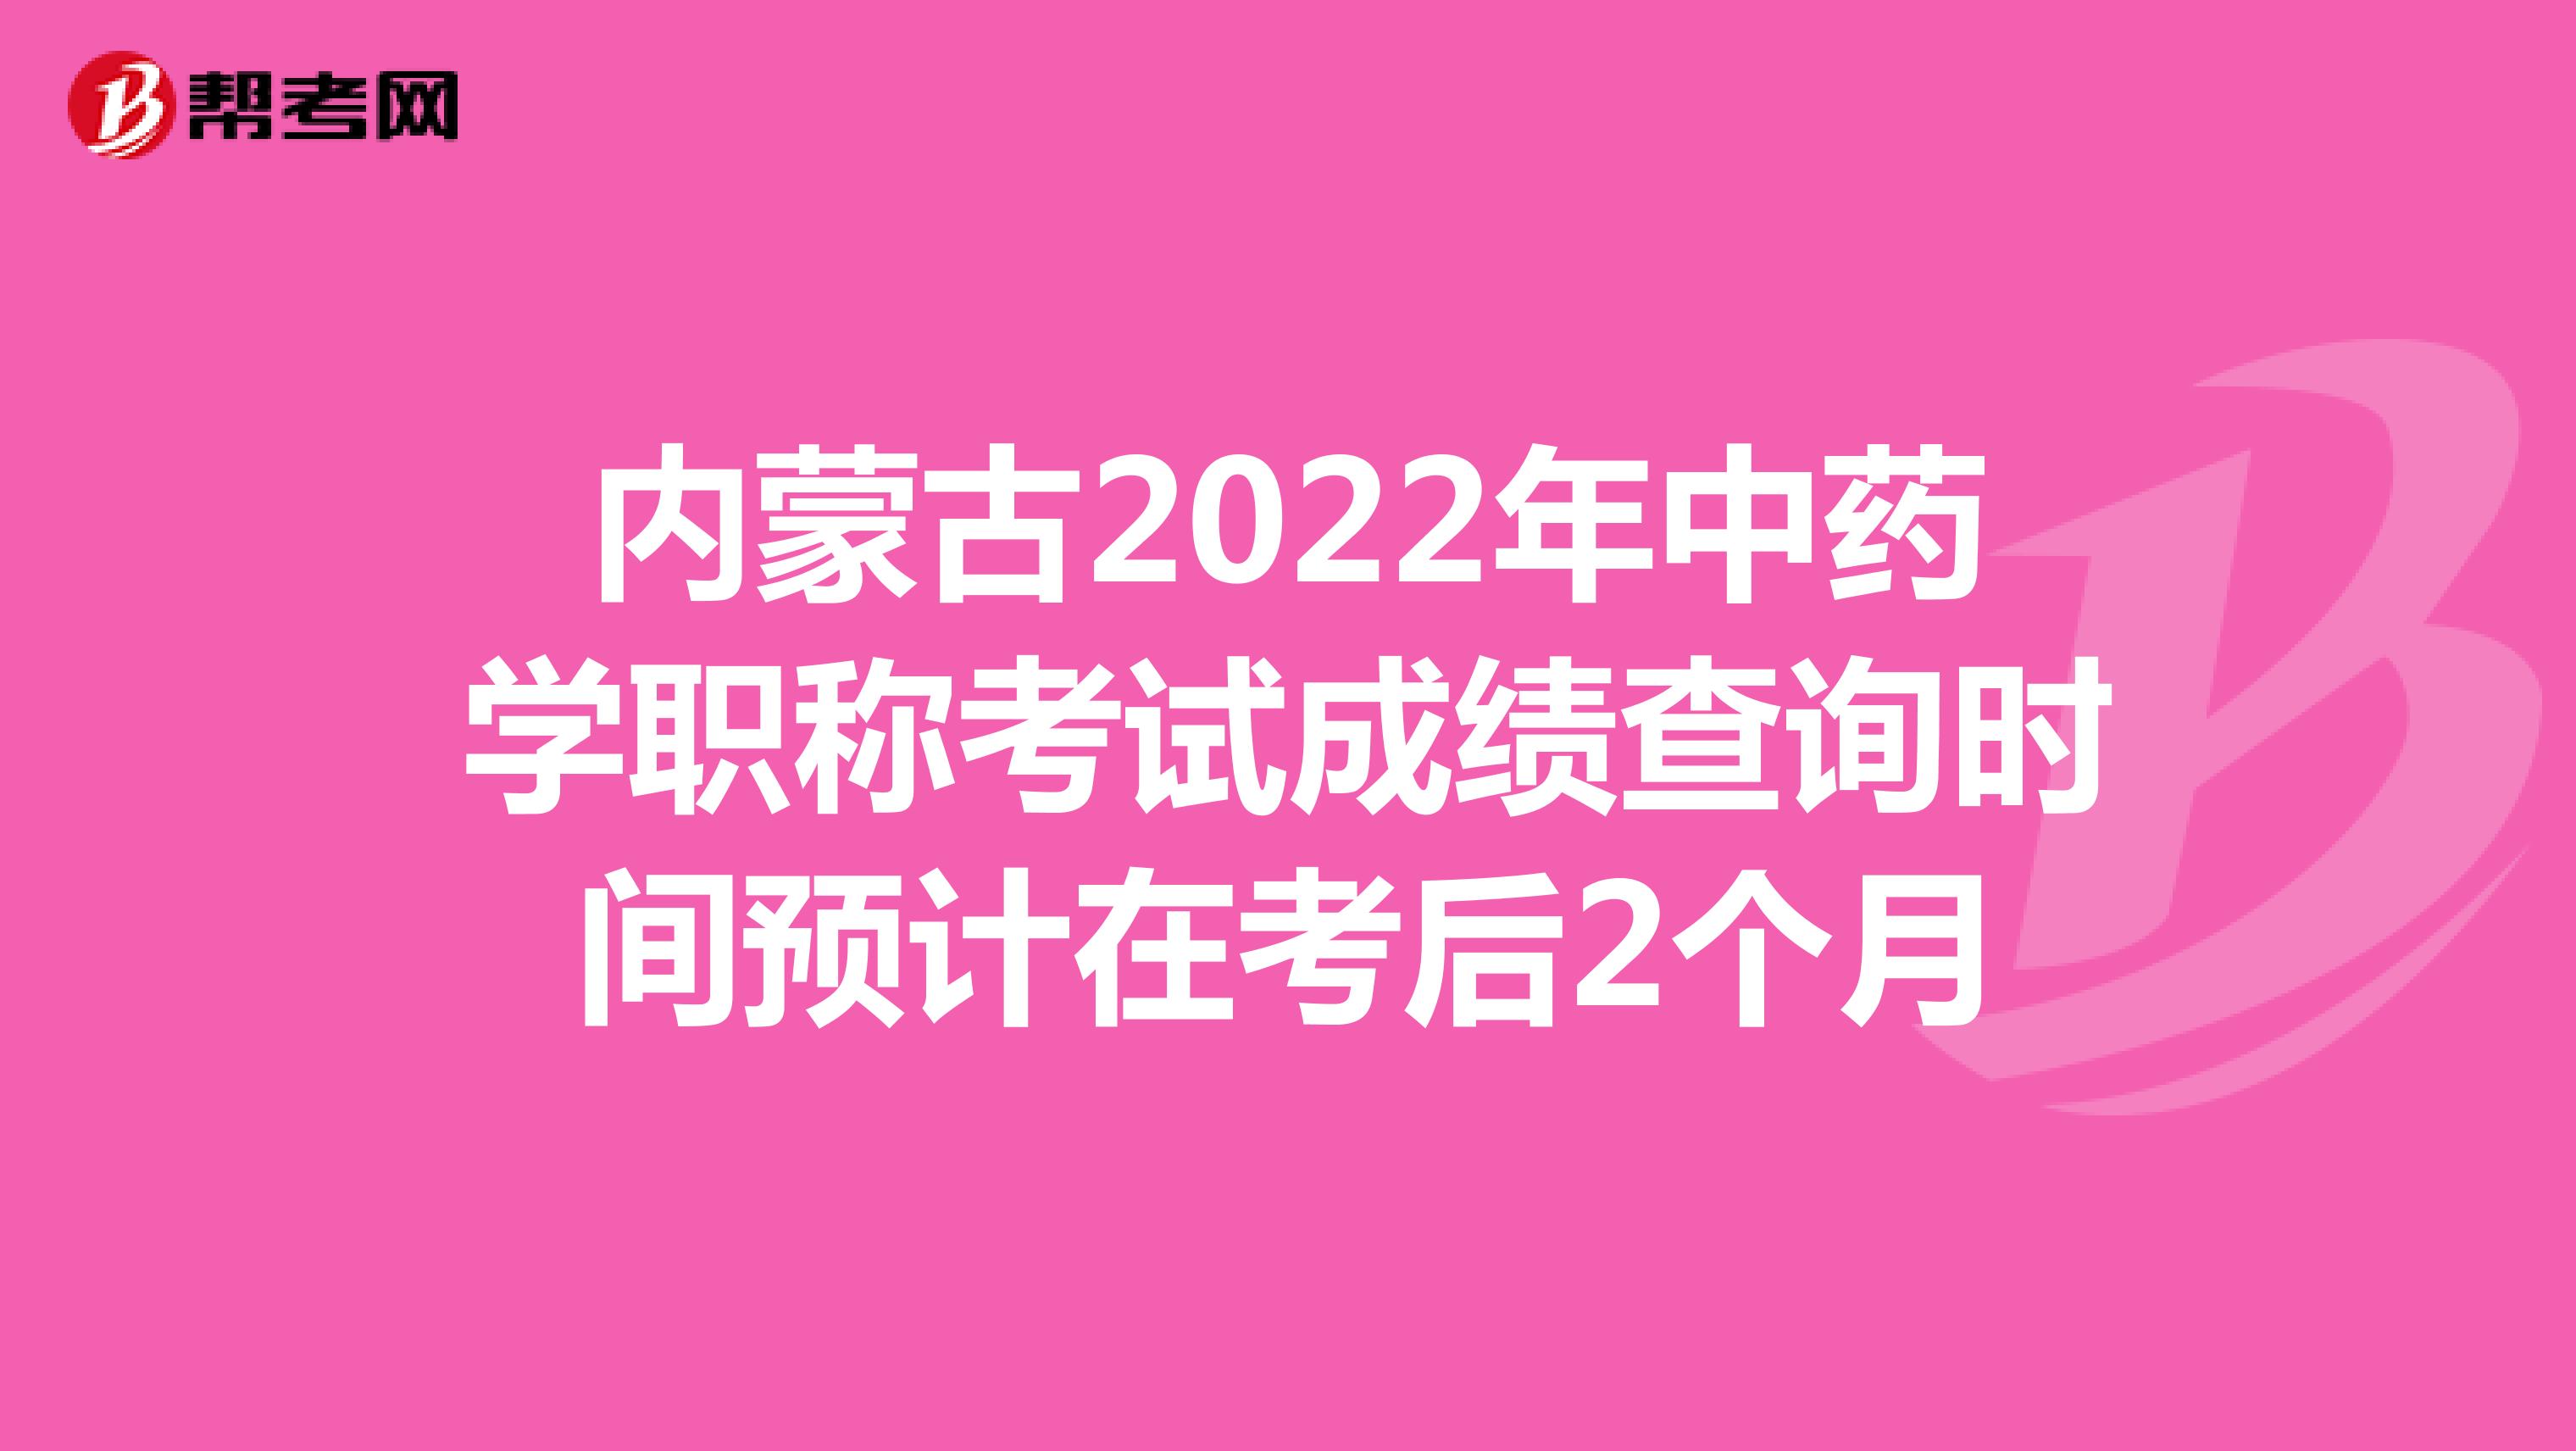 内蒙古2022年中药学职称考试成绩查询时间预计在考后2个月